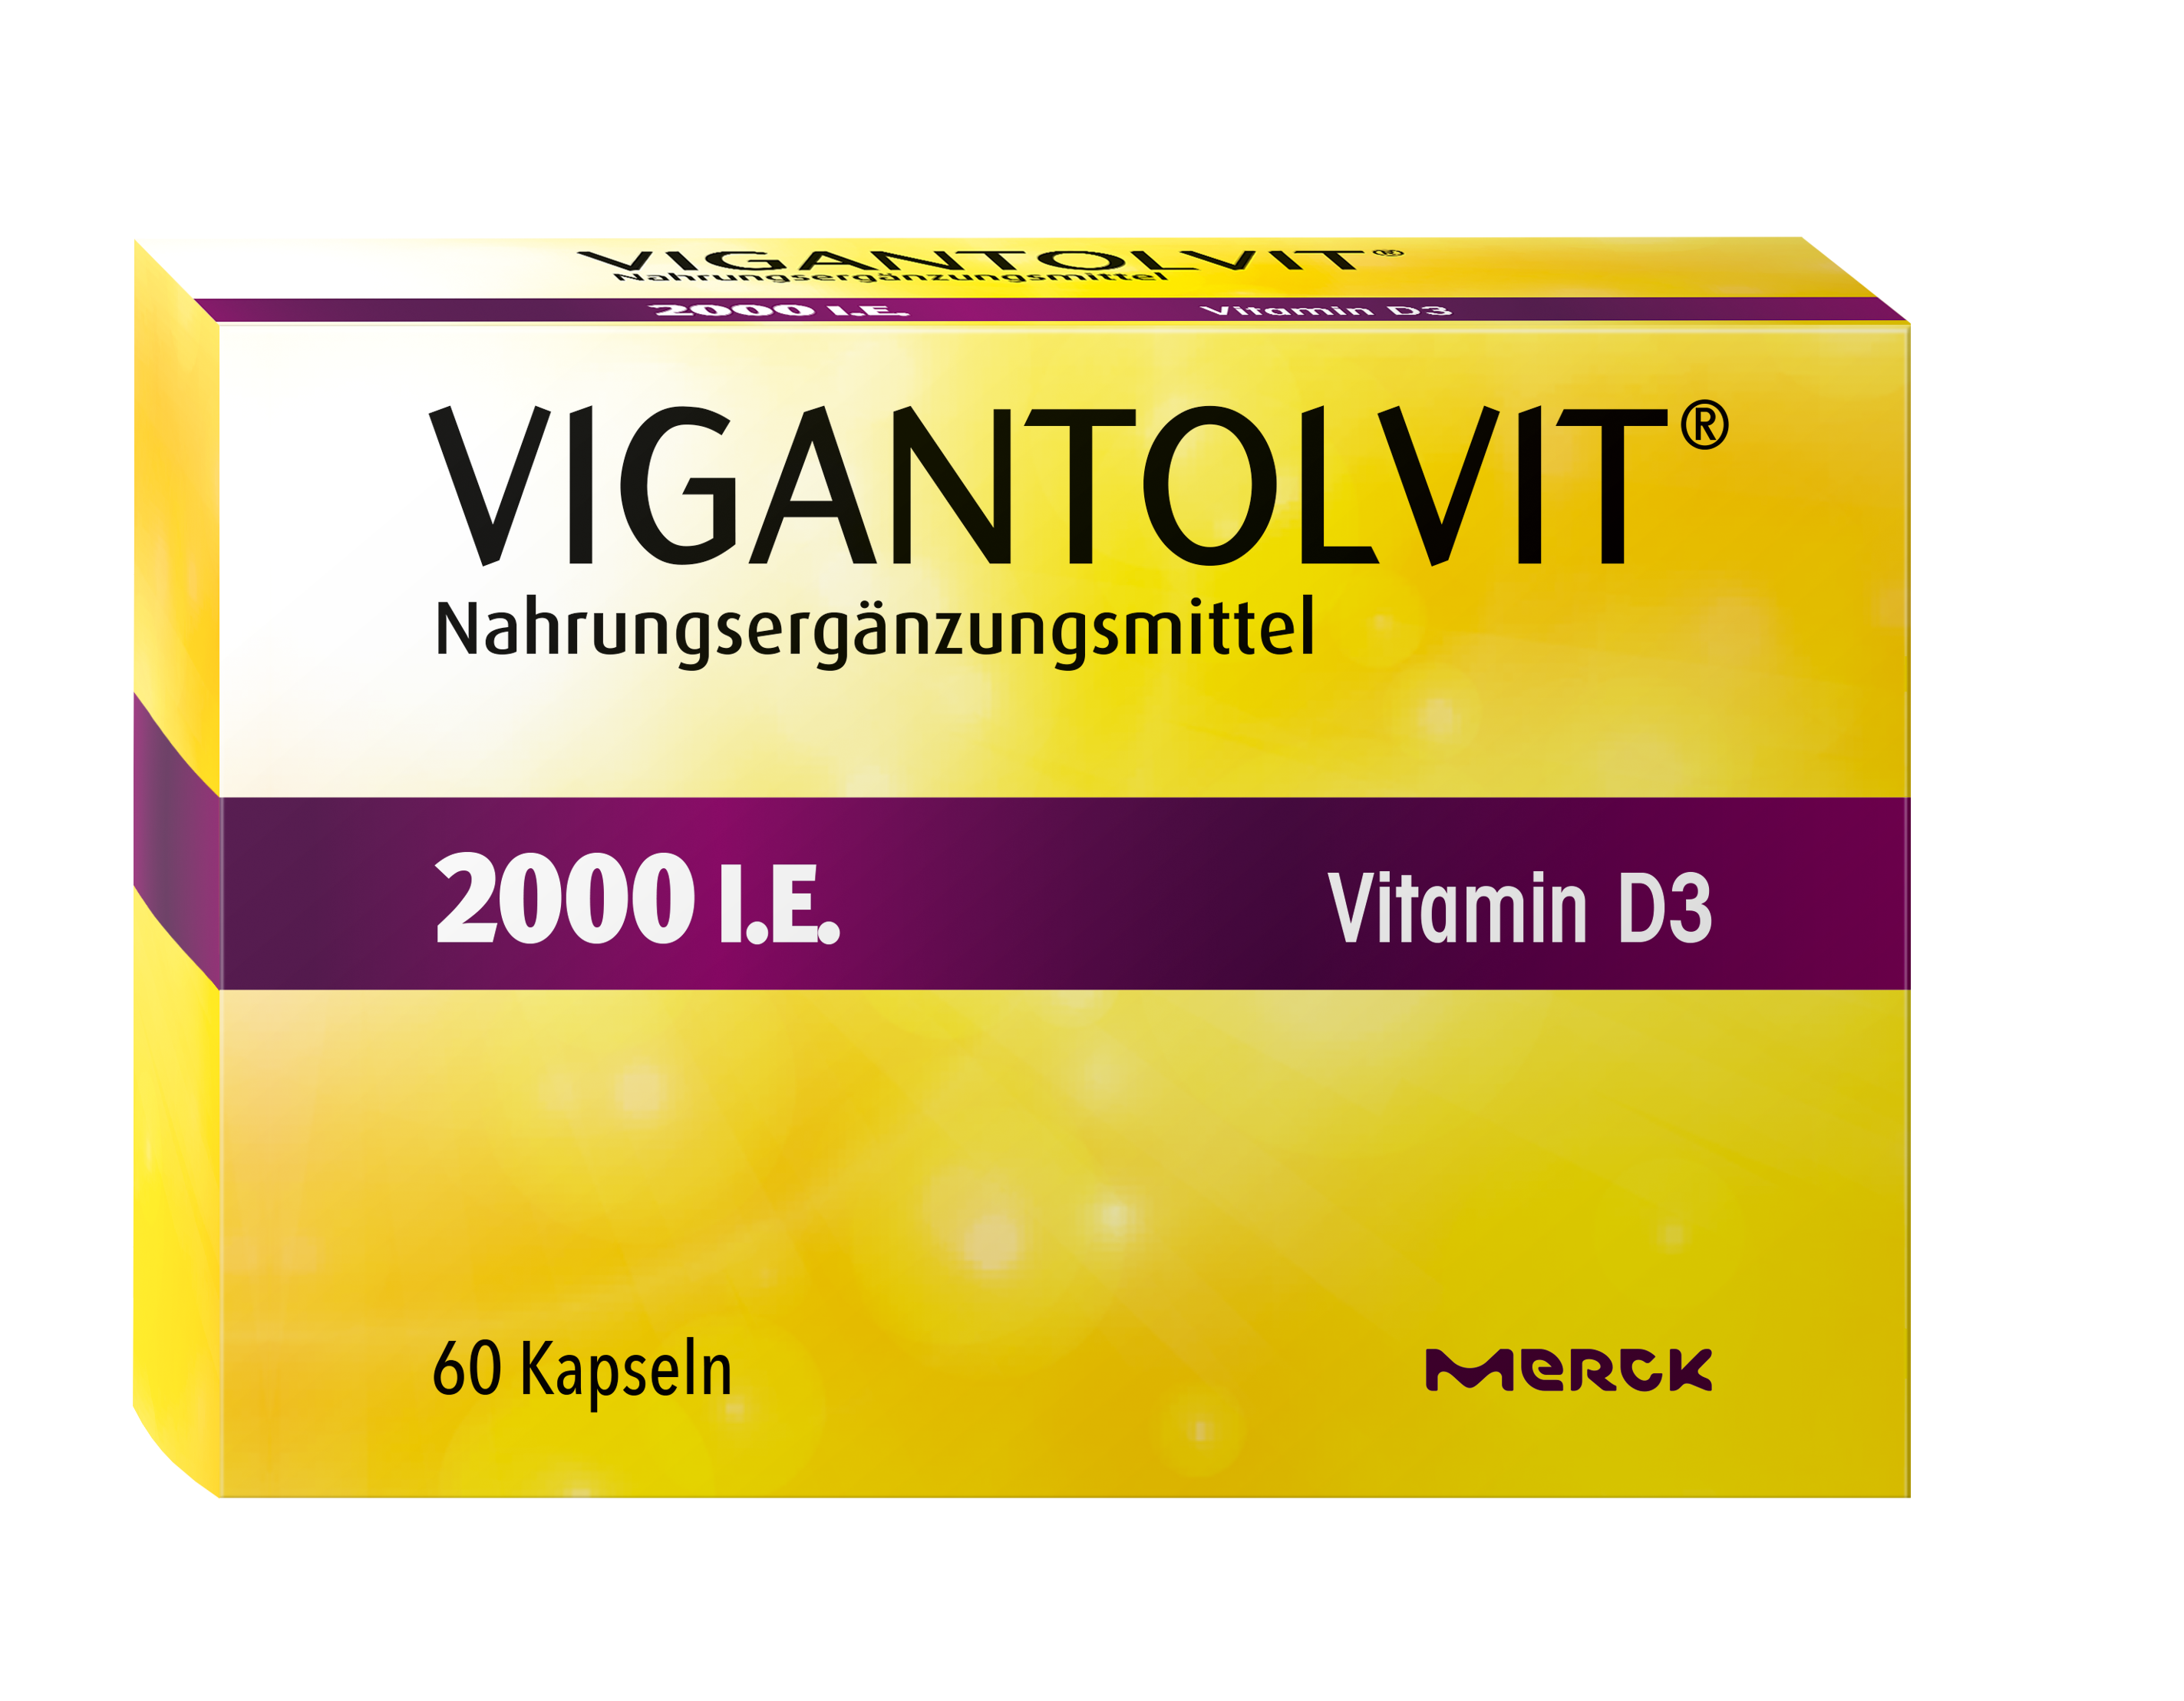 Vigantolvit 2000 I.E. Vitamin D3 Kapseln